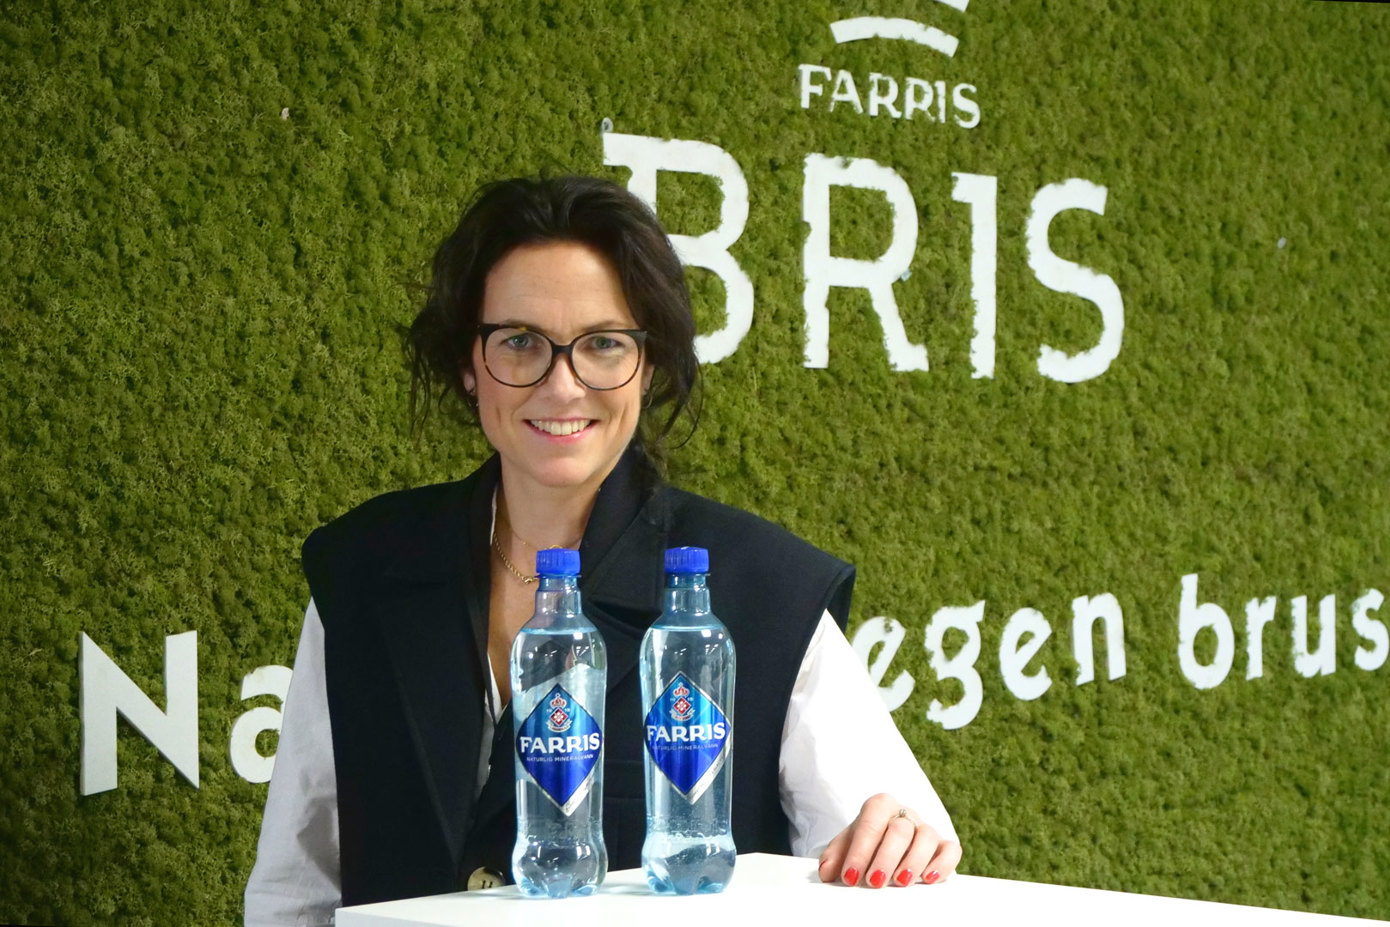 Flaskene er knapt til å skille fra hverandre, men endringen i klimaavtrykket er vesentlig, sier Johanna Ellefsen Rostad, kommunikasjonsdirektør i Ringnes